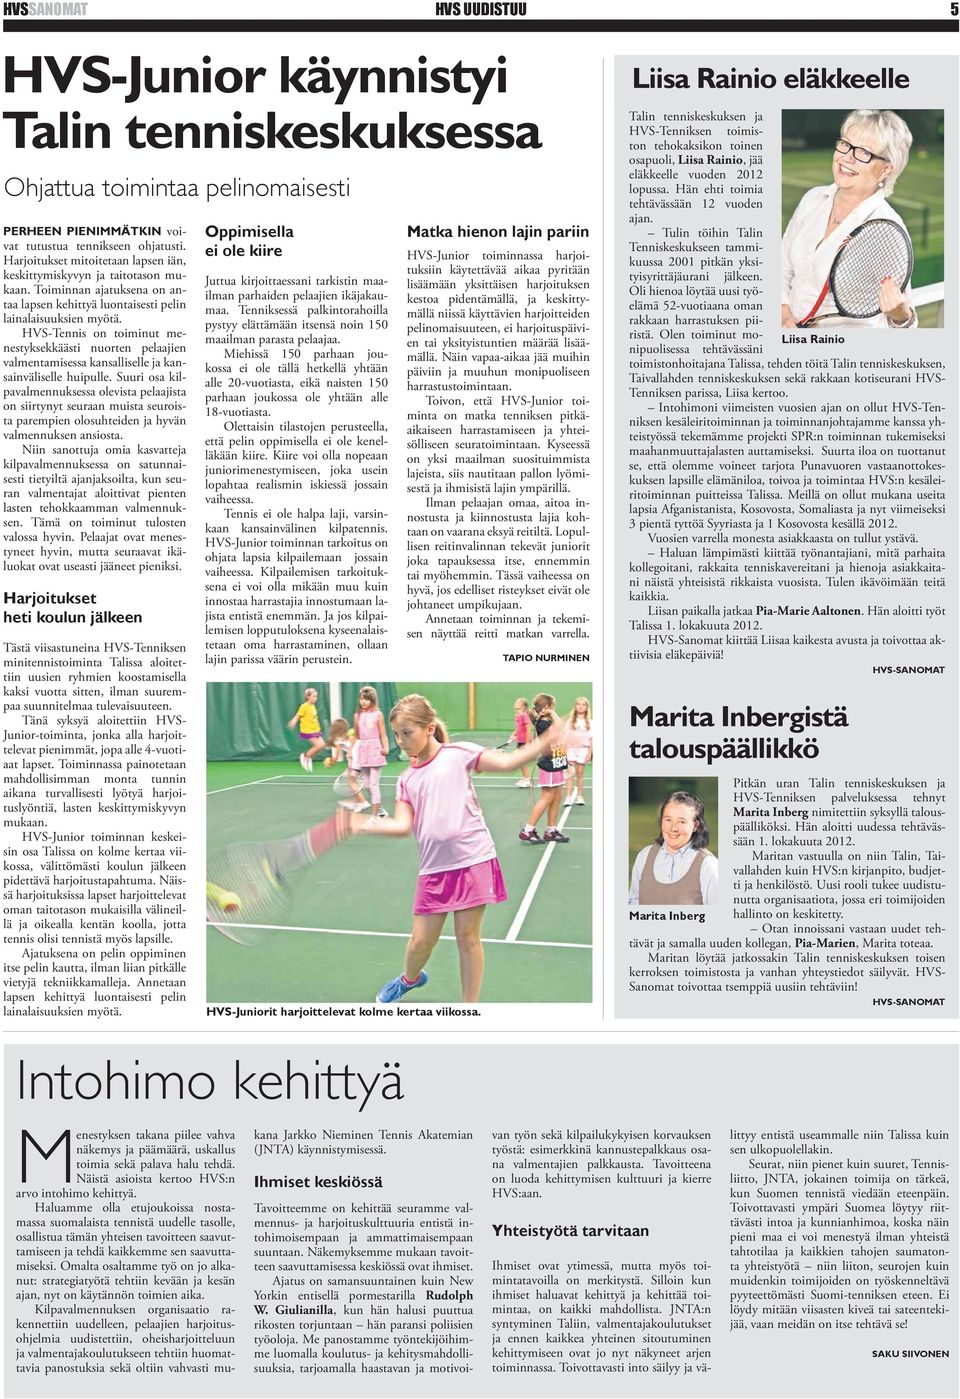 HVS-Tennis on toiminut menestyksekkäästi nuorten pelaajien valmentamisessa kansalliselle ja kansainväliselle huipulle.